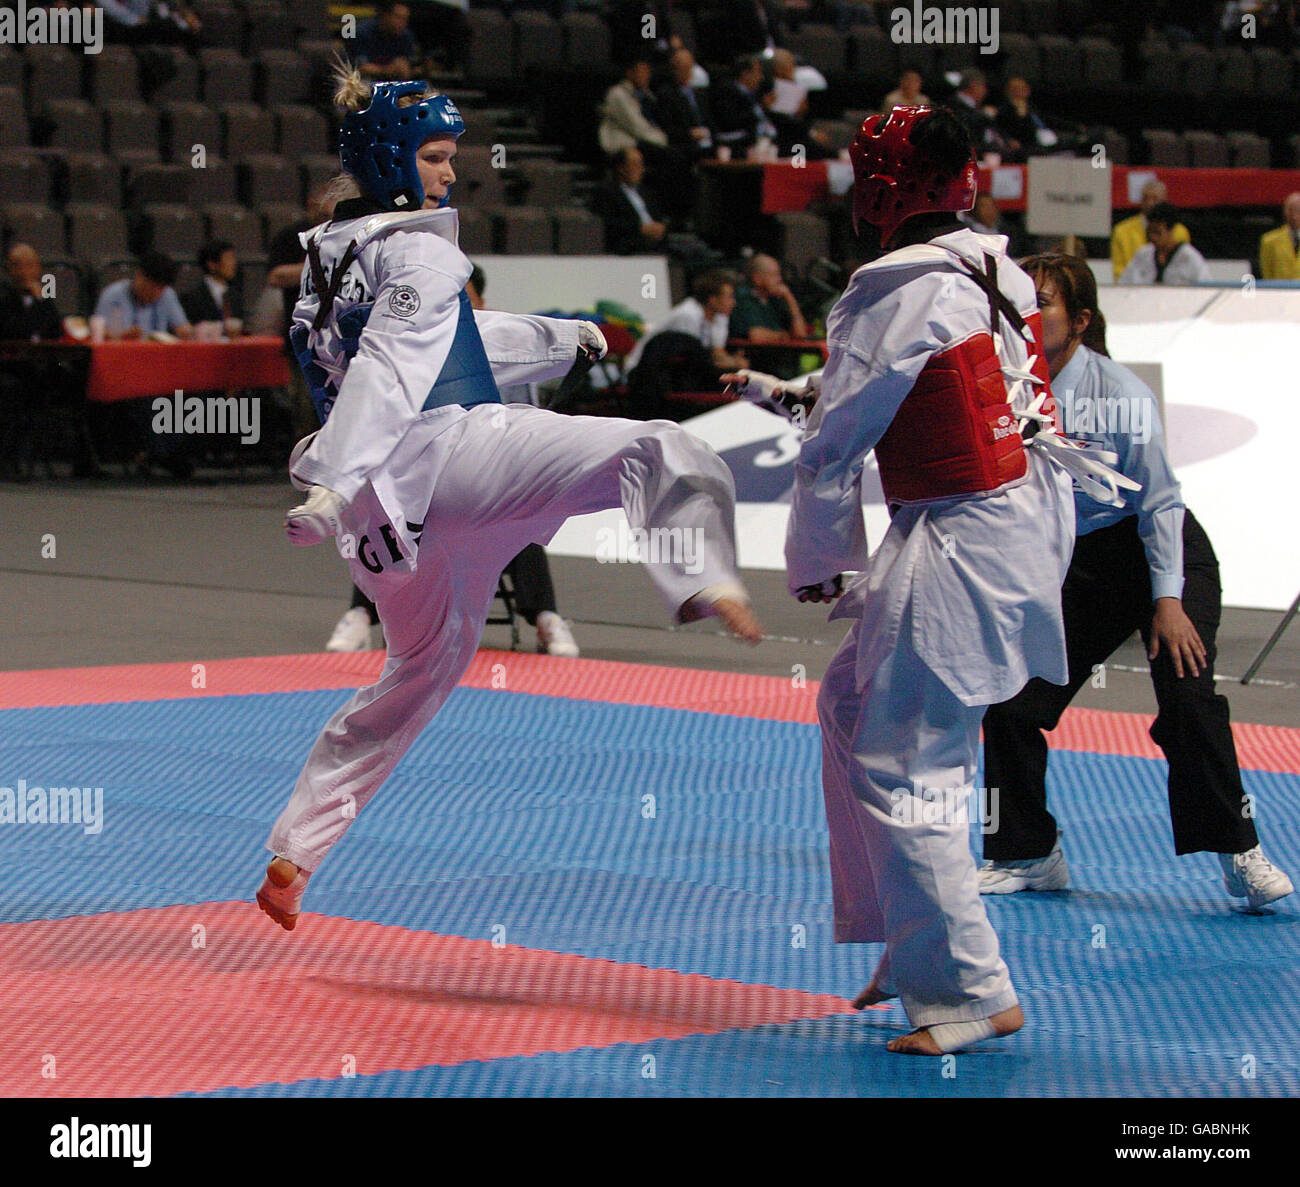 Athlétisme - 2007 qualification olympique mondiale de Taekwondo Bejing - MEN Arena. helena Fromm (bleue) en Allemagne en action contre Benabderrassoul Mouna au Maroc Banque D'Images